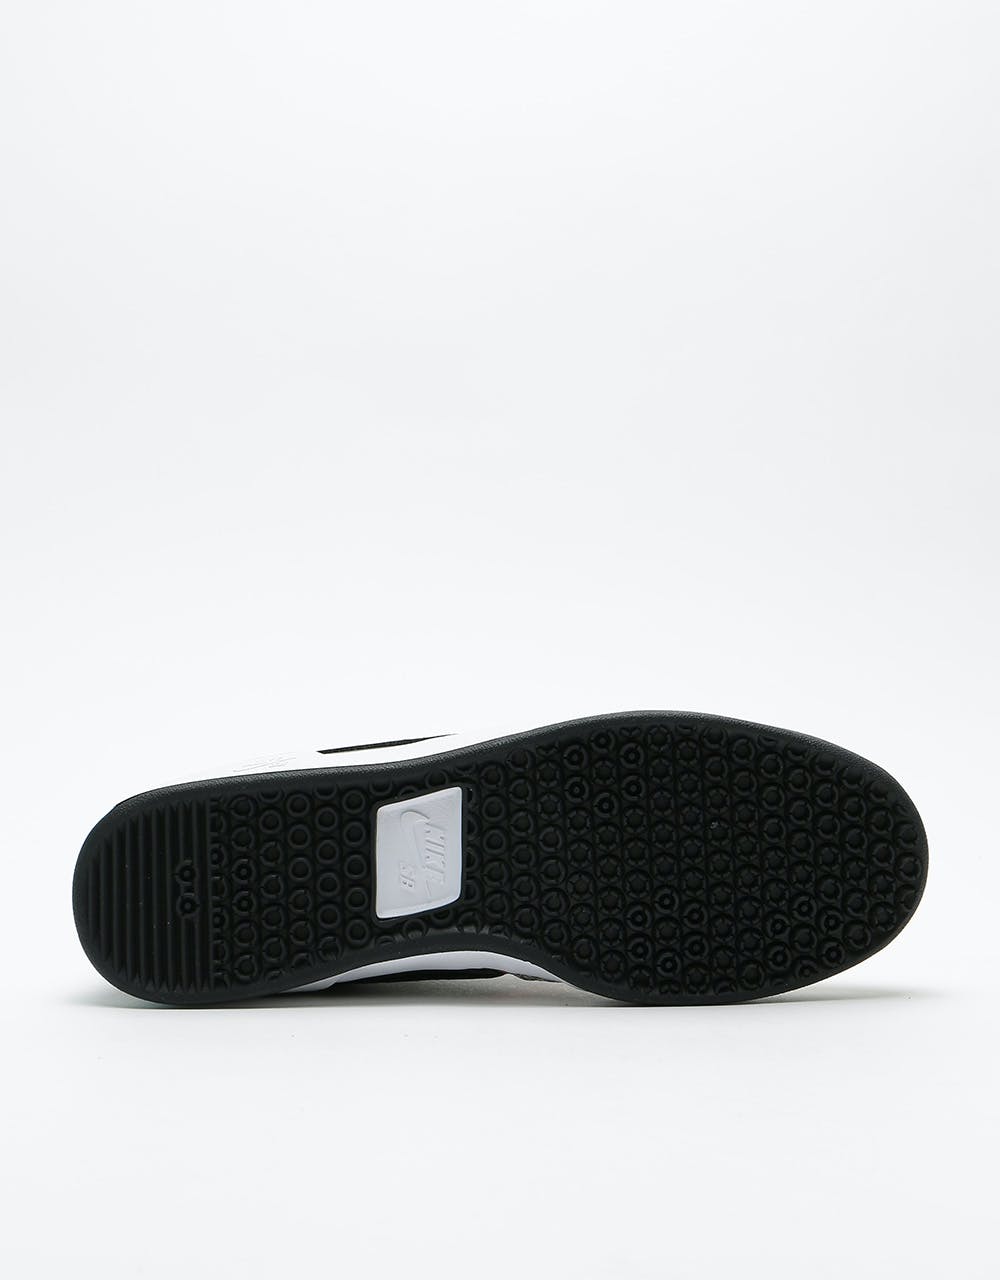 Nike SB GTS Return Prm L Skate Shoes - Cobblestone/Black-Monarch-Black